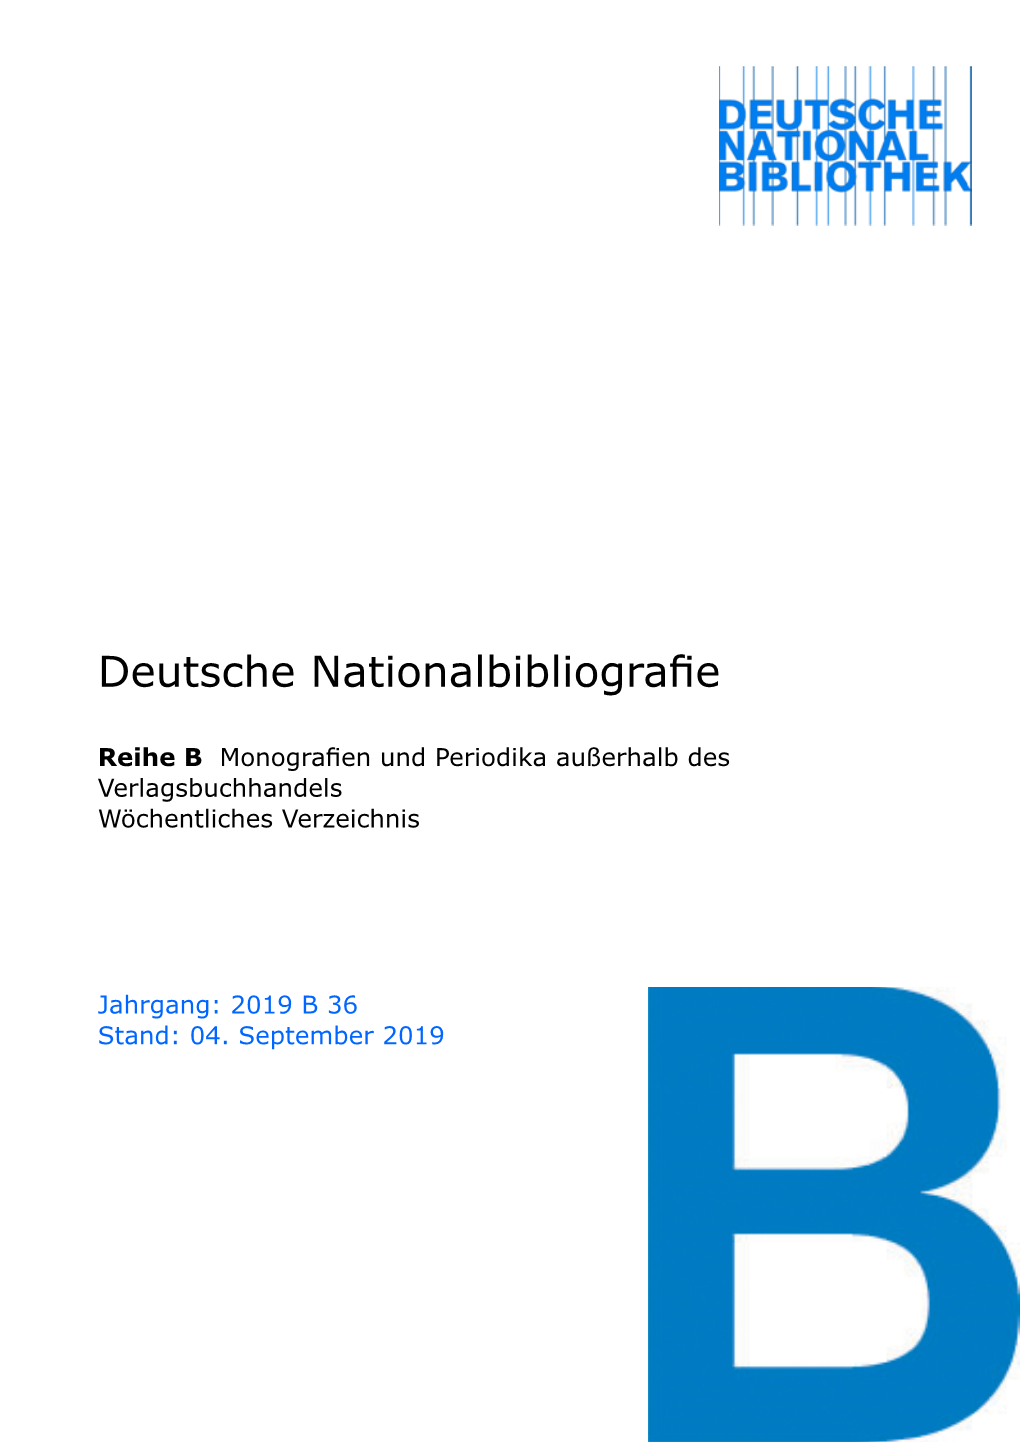 Deutsche Nationalbibliografie 2019 B 36